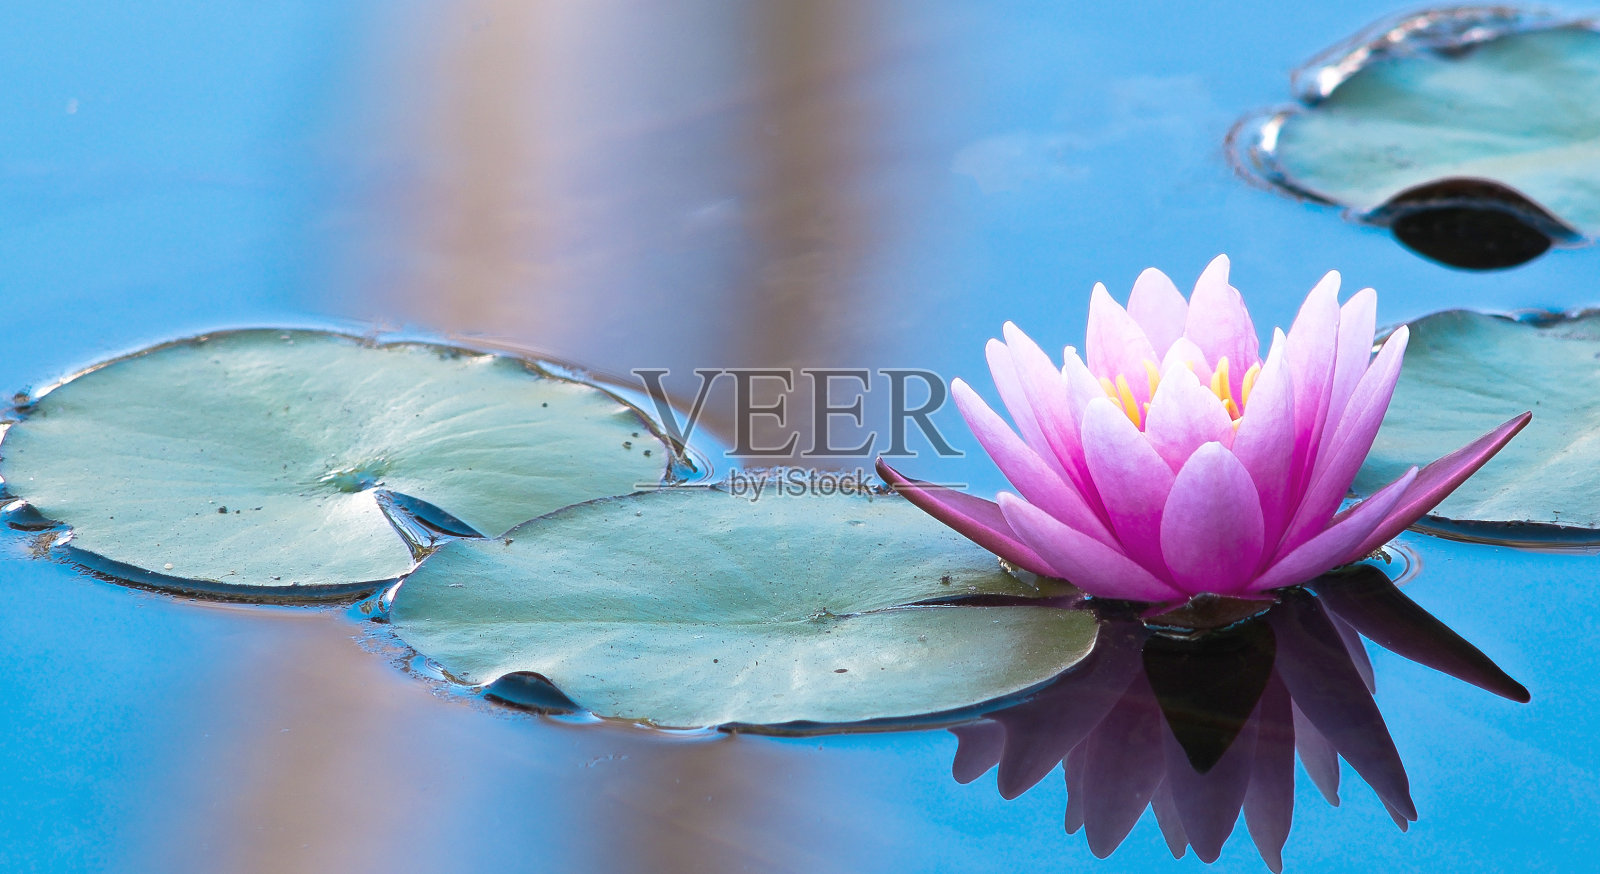 粉红色的睡莲在一个和平的自然环境照片摄影图片